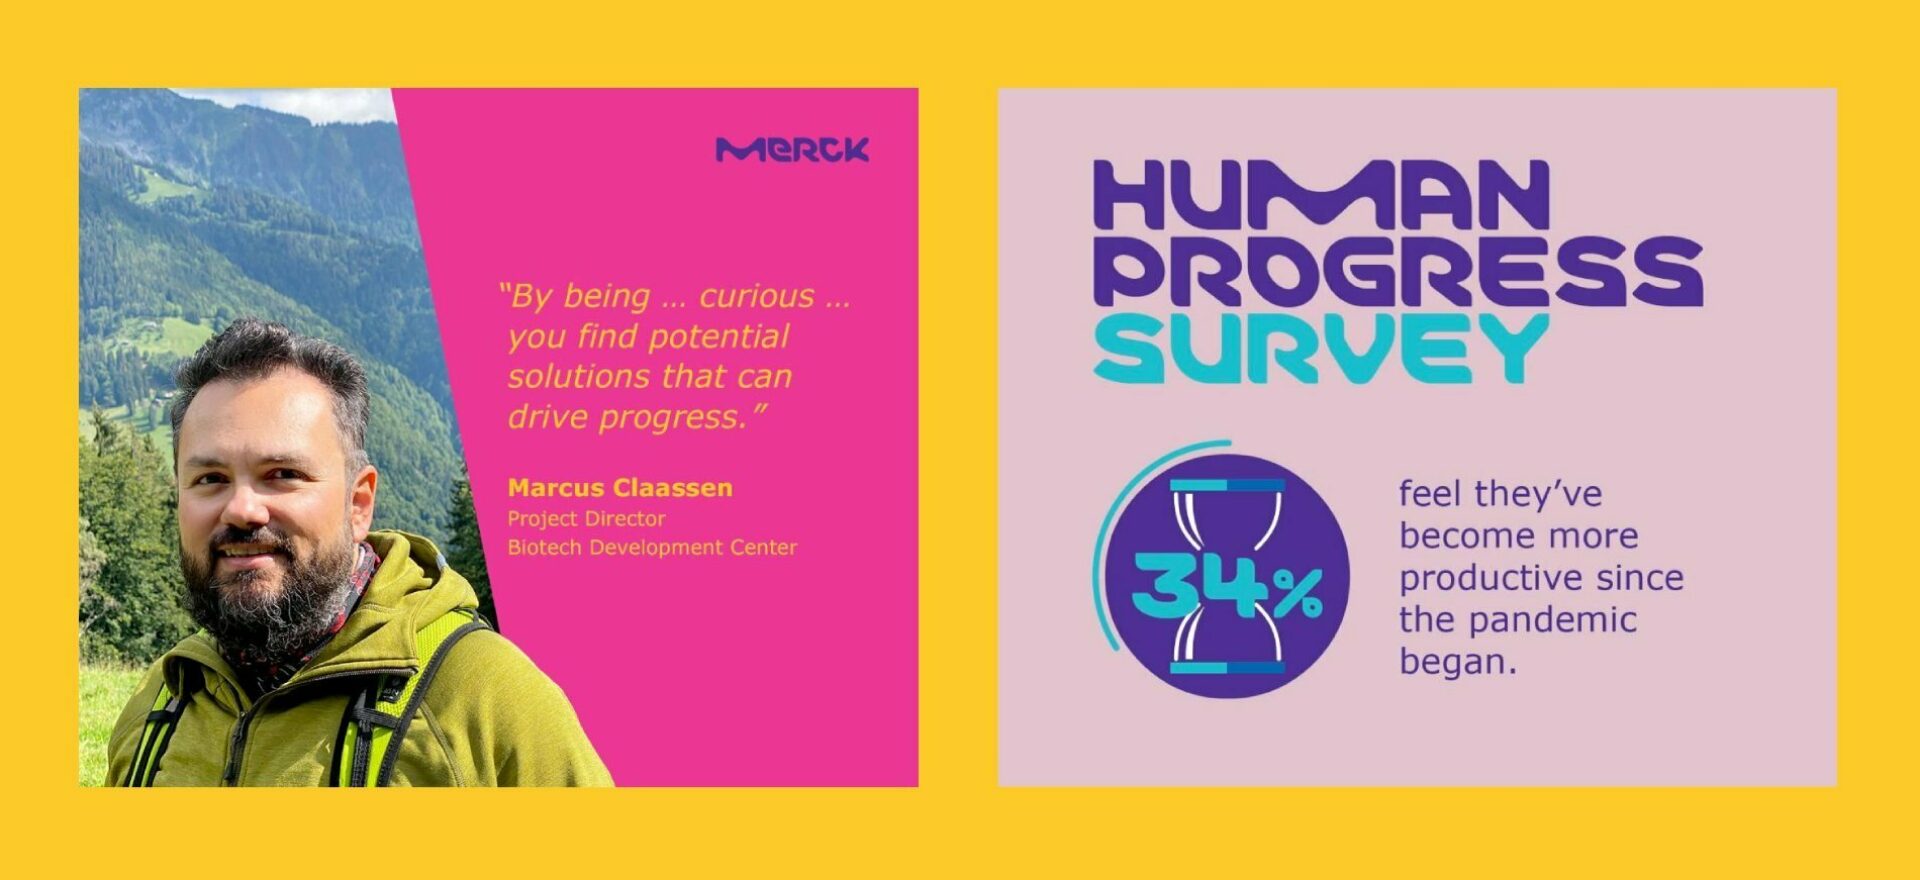 Merck Human Progress – Insights & Quotes 02